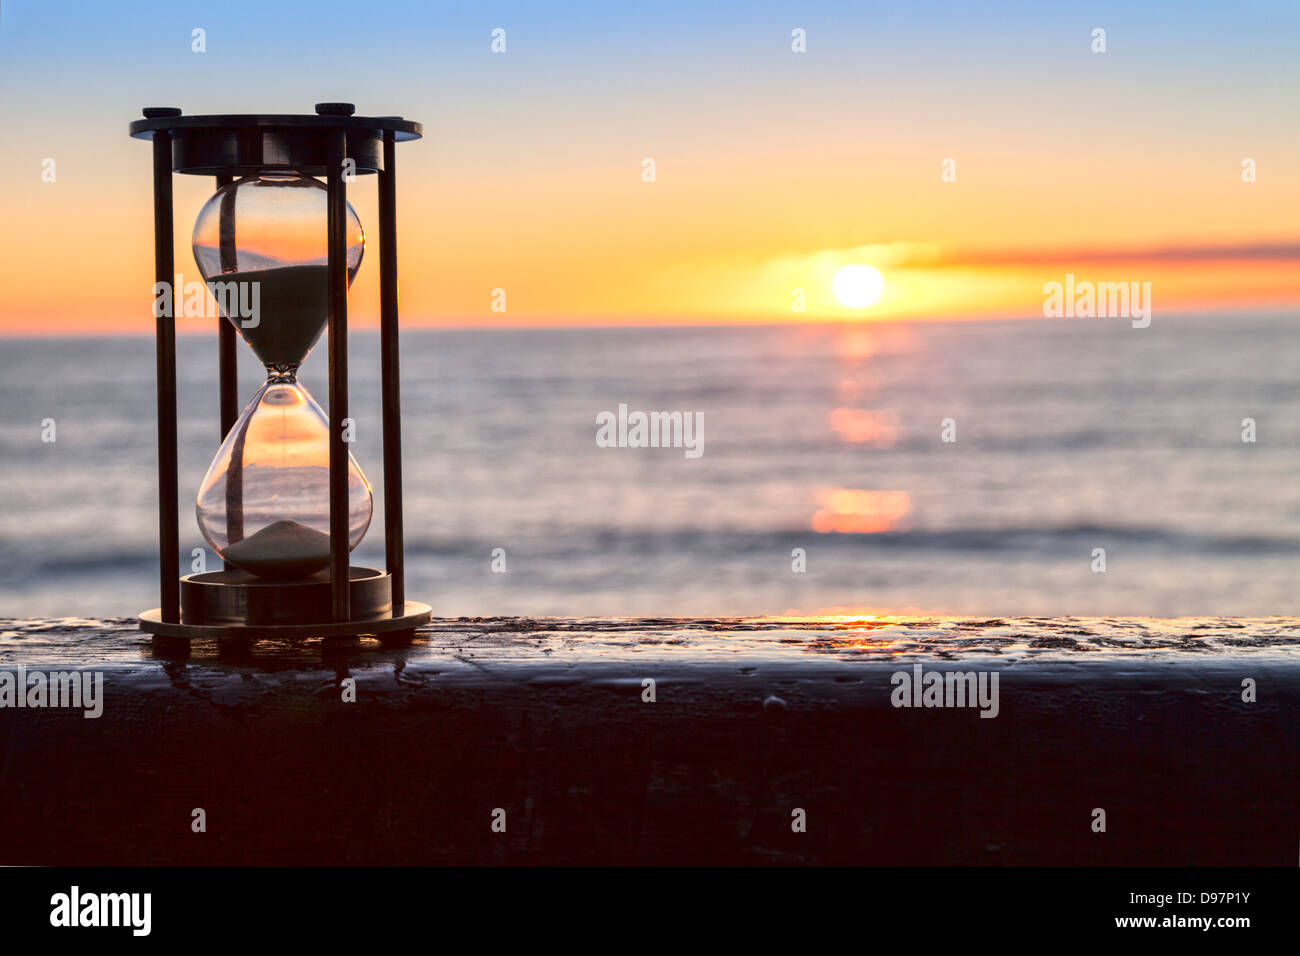 Sanduhr oder Sand Timer vor einem schönen klaren Sonnenaufgang oder Sonnenuntergang. Stockfoto